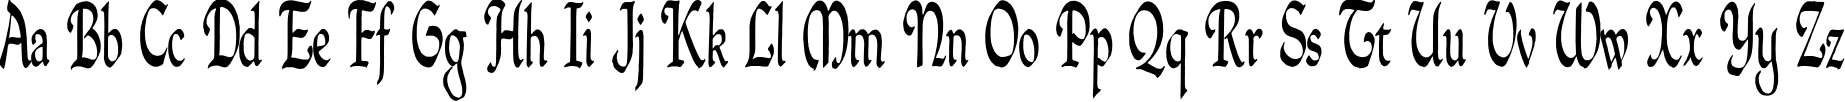 Пример написания английского алфавита шрифтом QuillPerpendicularCondensed